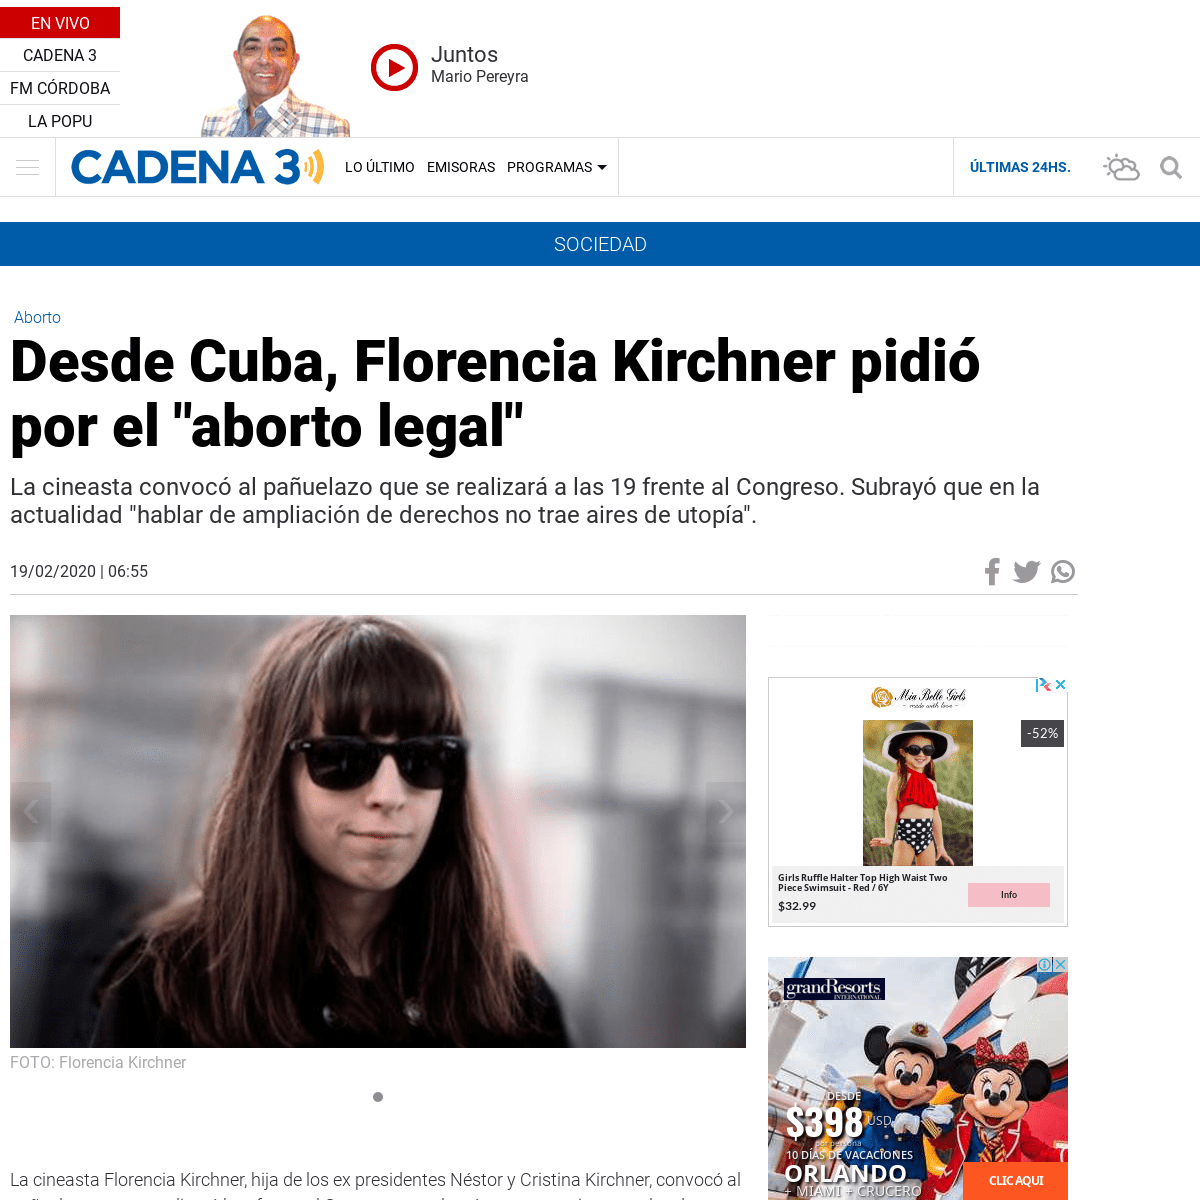 A complete backup of www.cadena3.com/noticia/sociedad/desde-cuba-florencia-kirchner-pidio-por-el-aborto-legal_253250